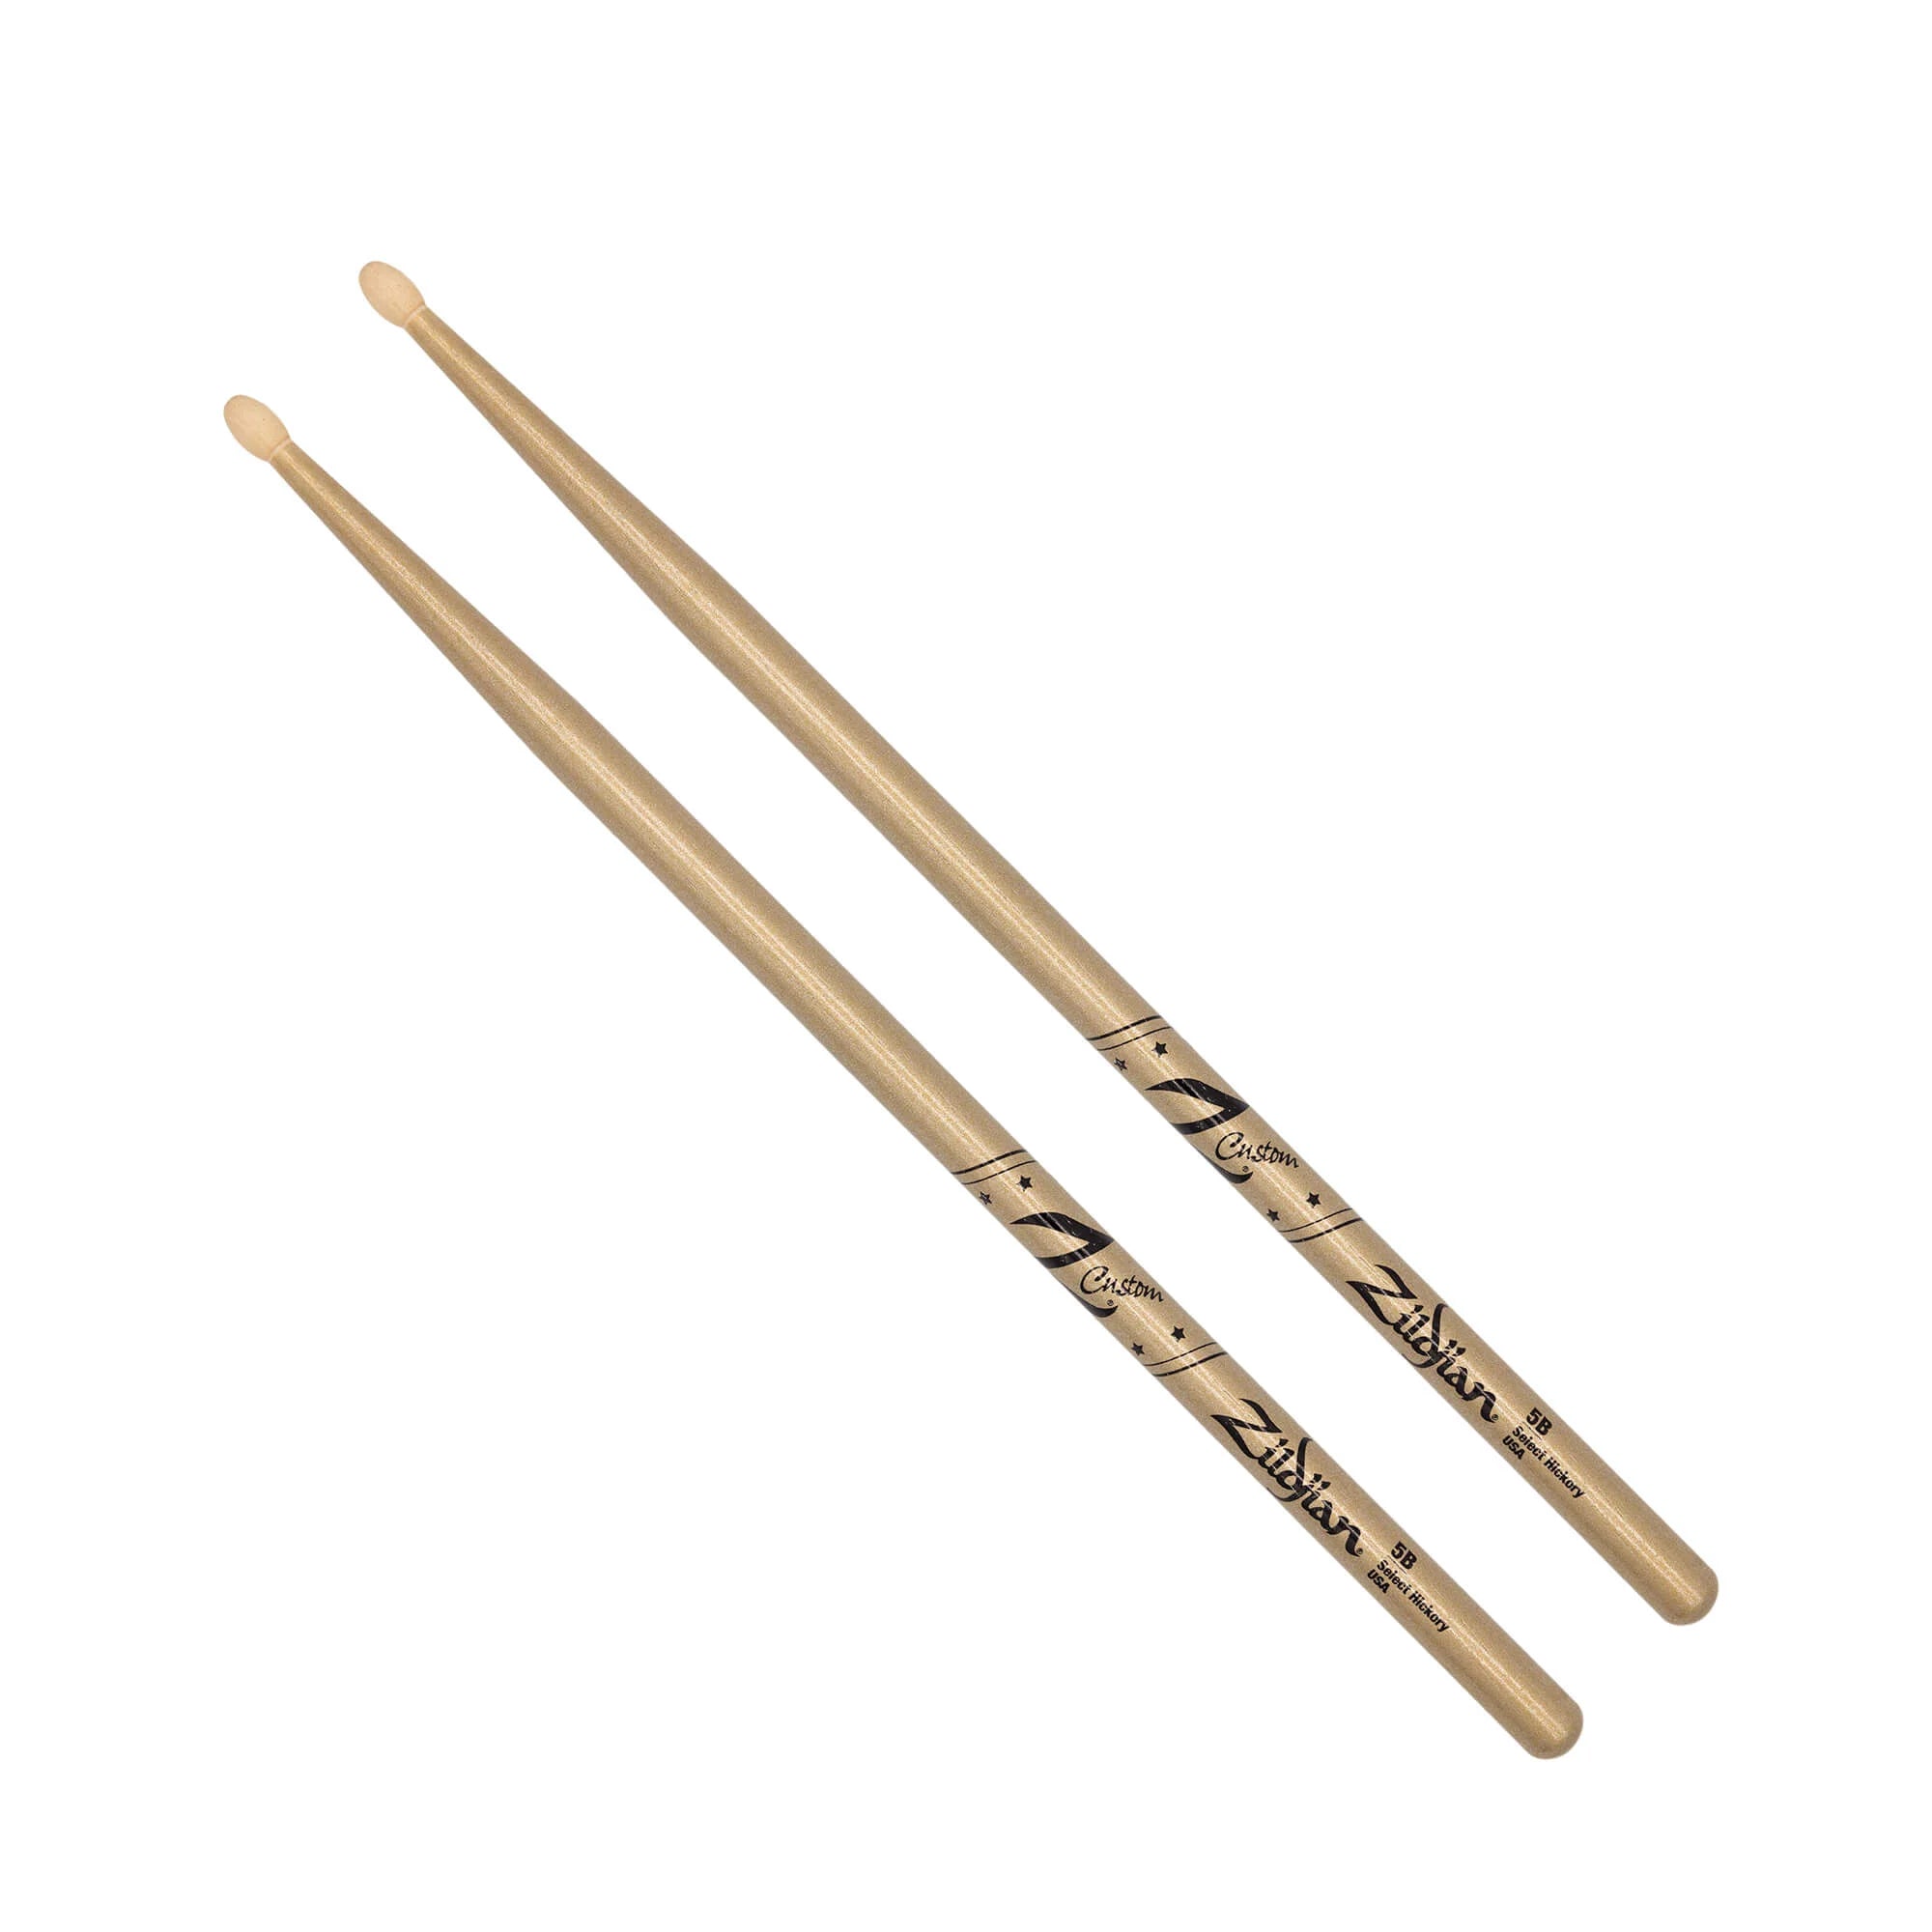 Zildjian Z Custom LE Drumstick Collection 5B Gold Chroma, Wood Tip (Z5BCG-ZC) DRUM STICKS Zildjian 